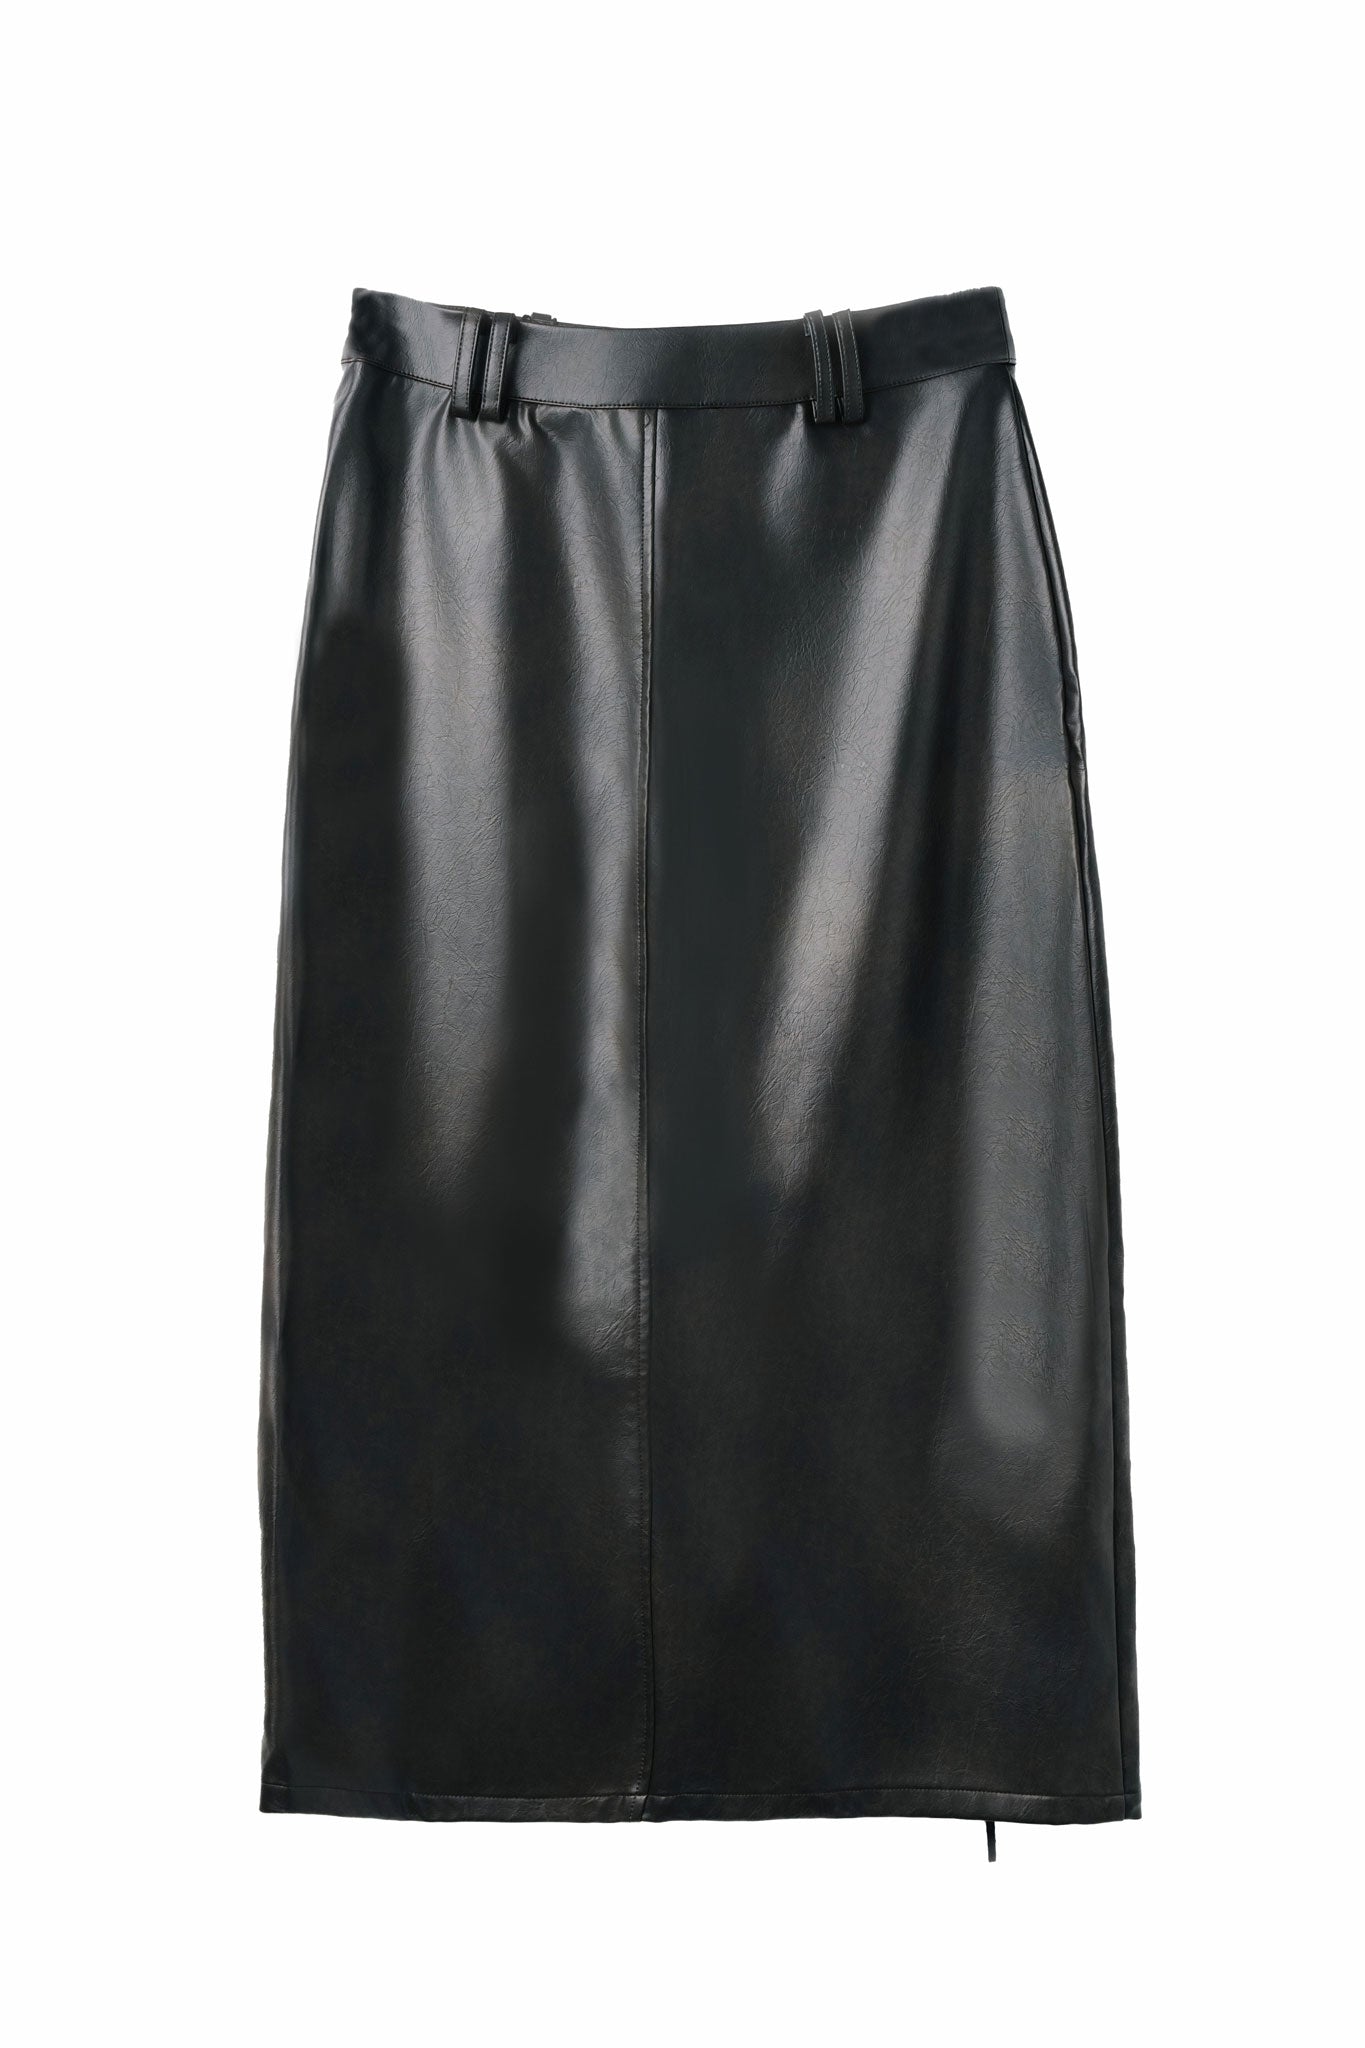 The Bell Jar Maxi Skirt